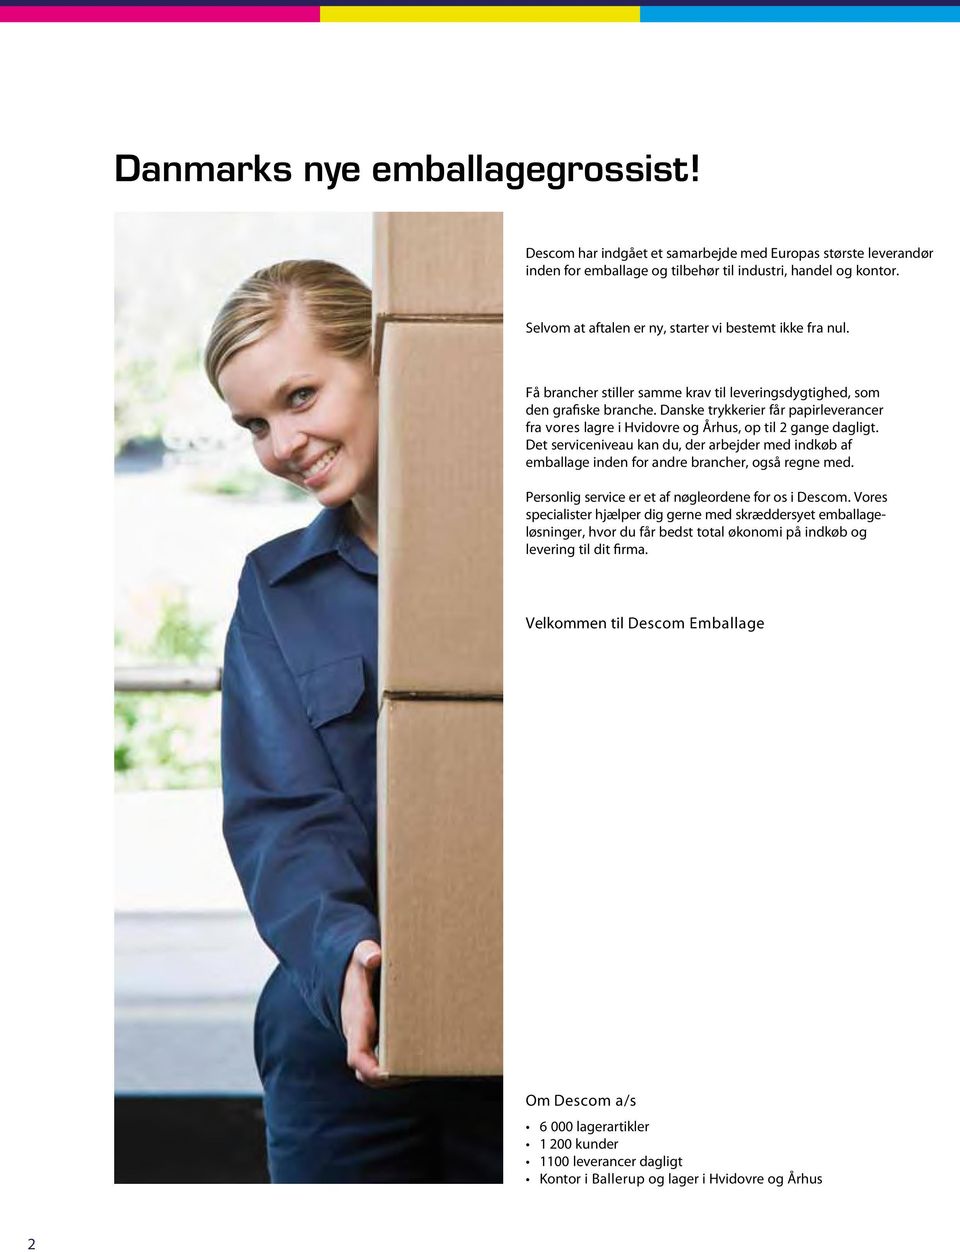 Danske trykkerier får papirleverancer fra vores lagre i Hvidovre og Århus, op til gange dagligt.